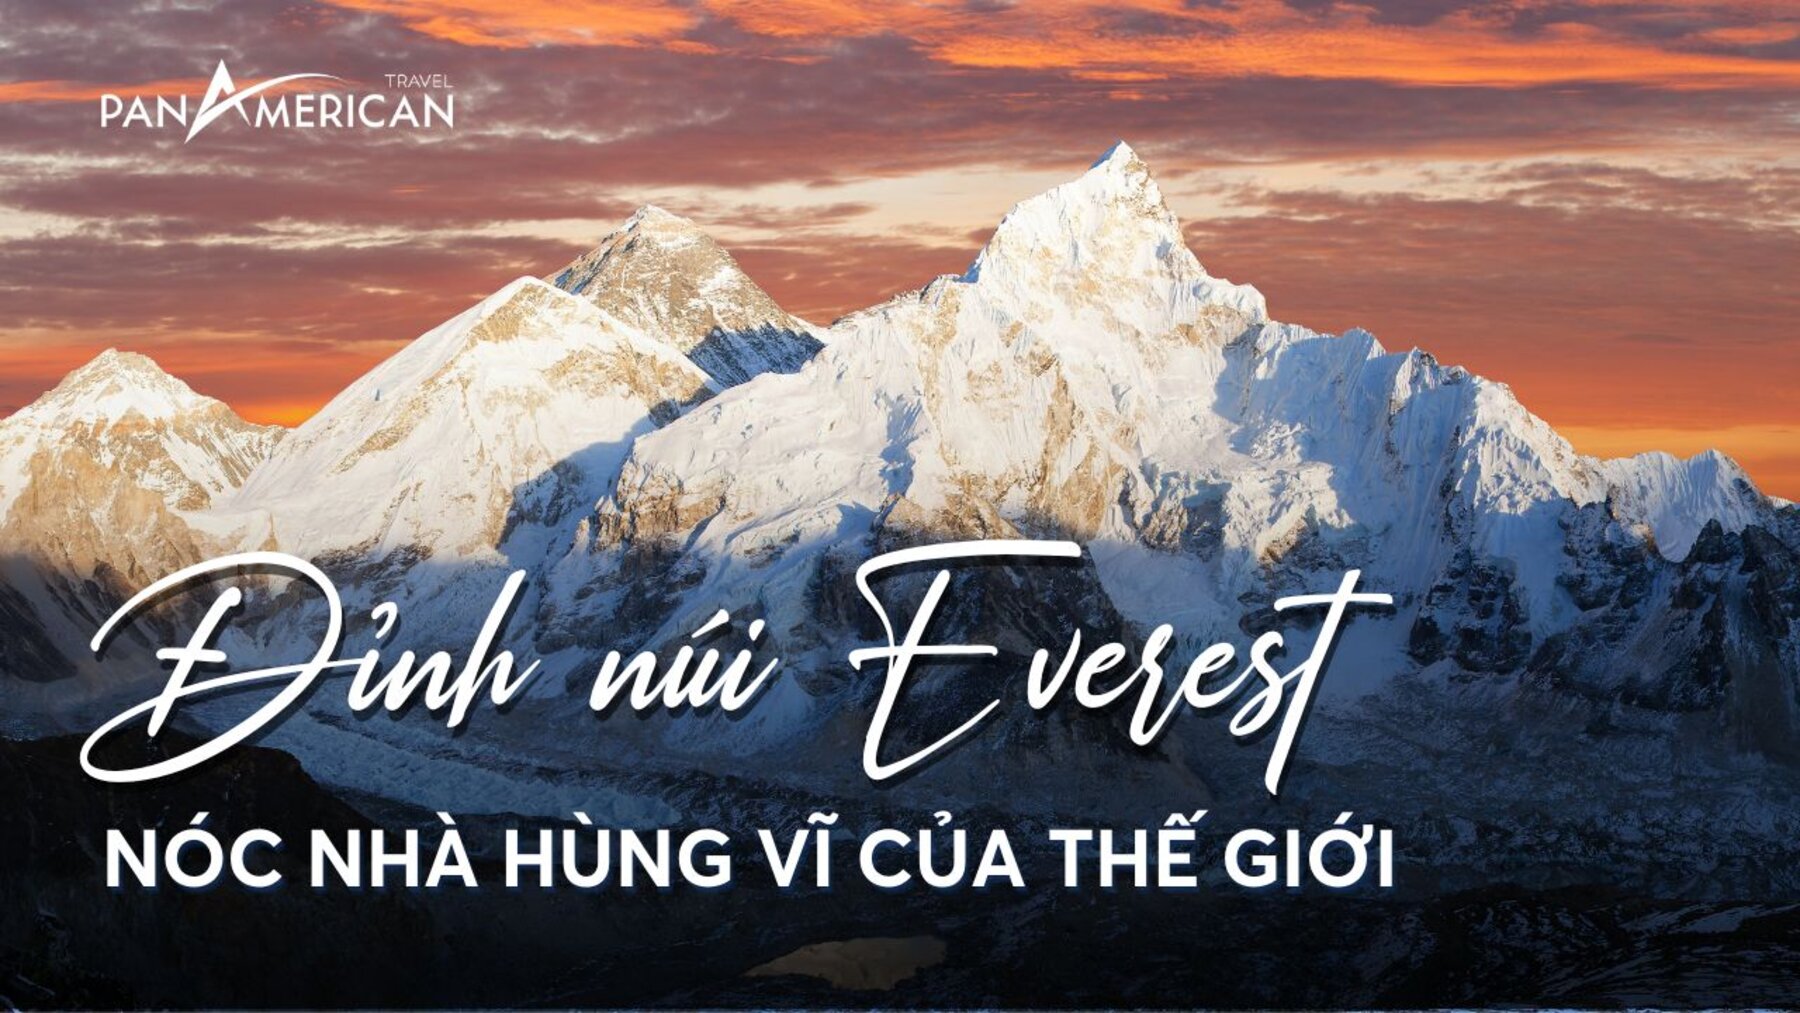 Đỉnh núi Everest ở đâu? Chiêm ngưỡng vẻ đẹp toàn cảnh từ nóc nhà của thế giới